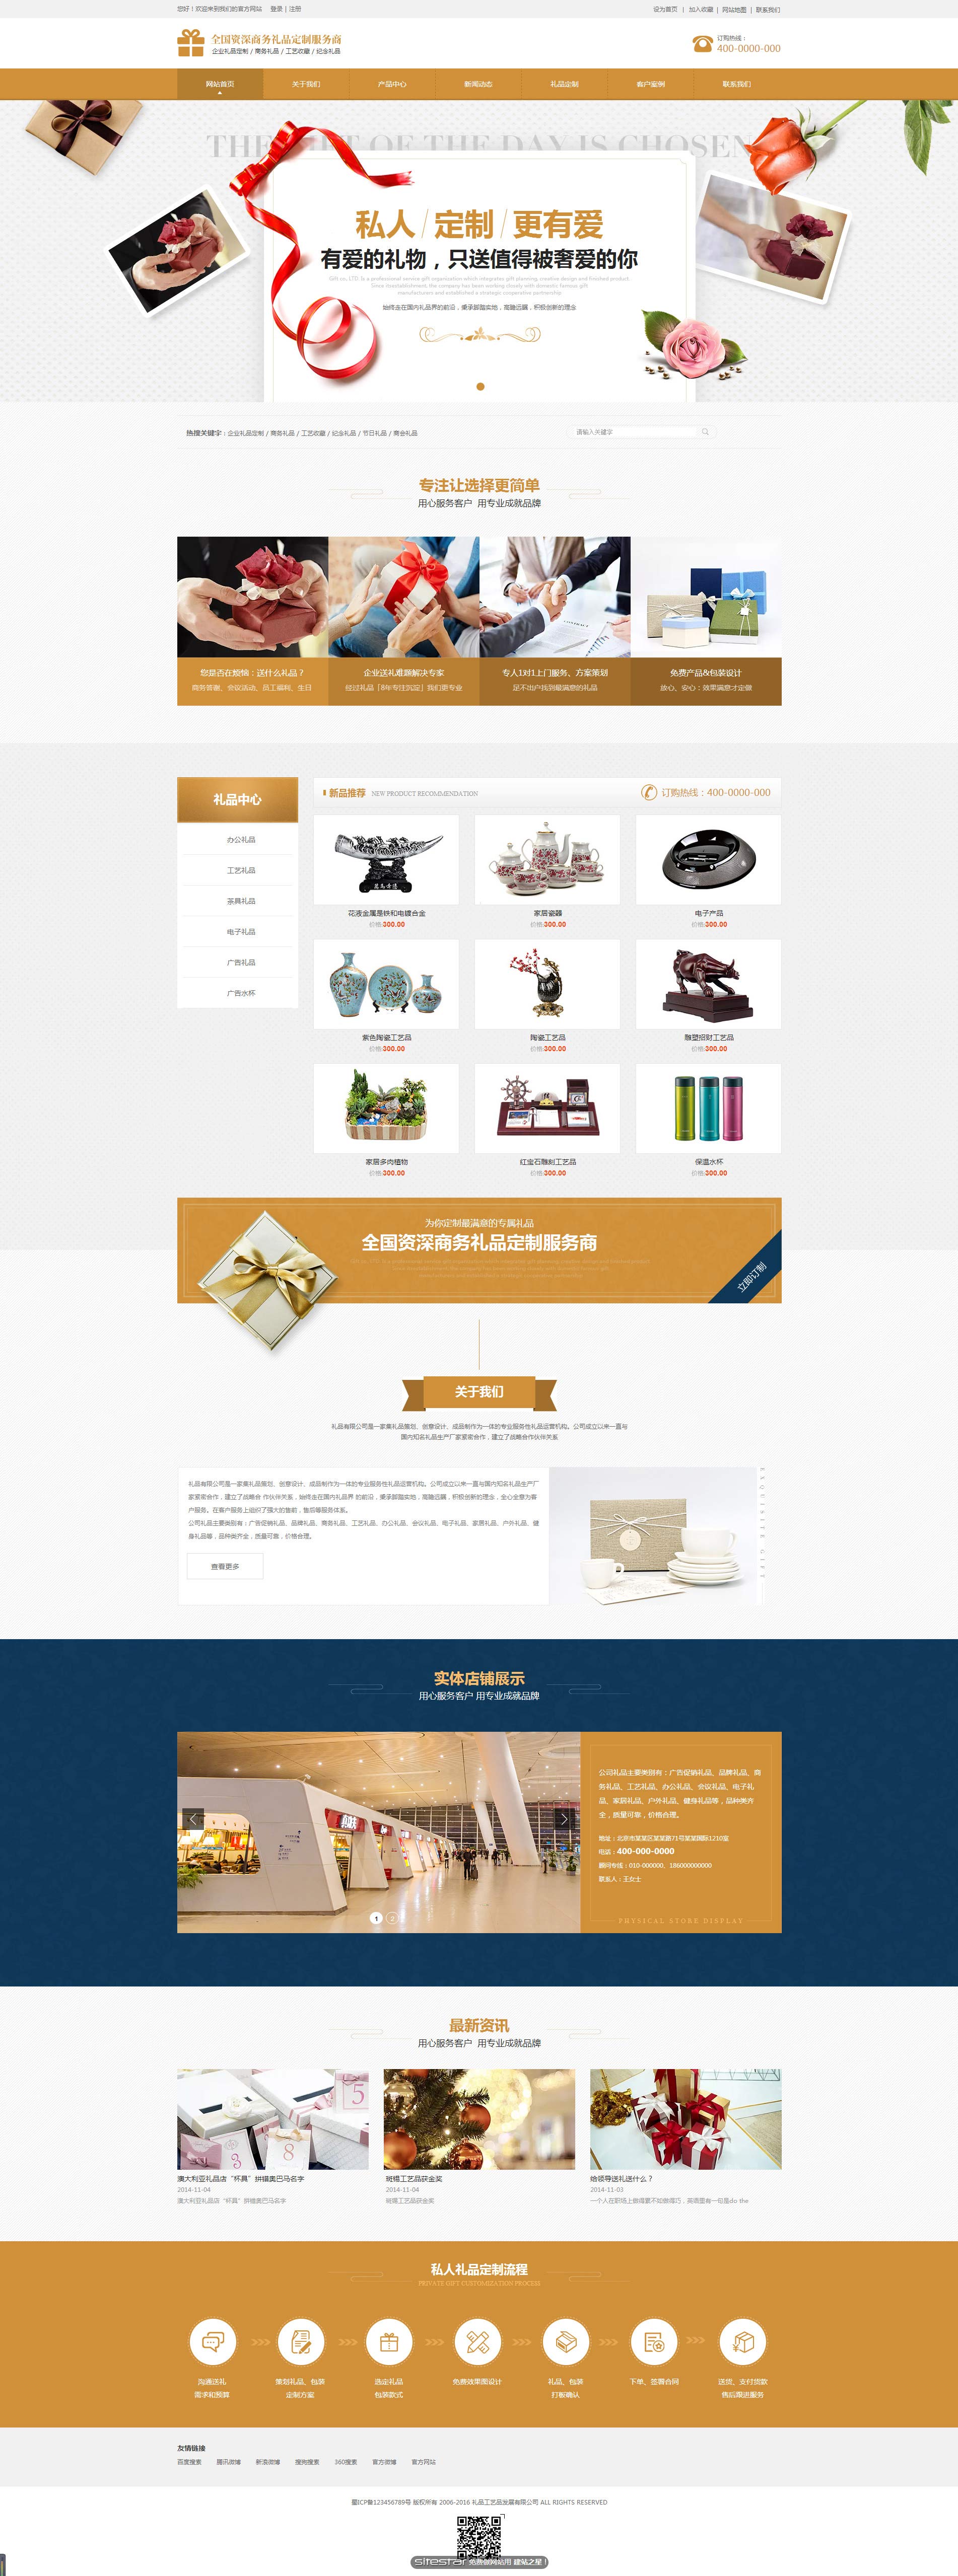 企业网站精美模板-gifts-1029916